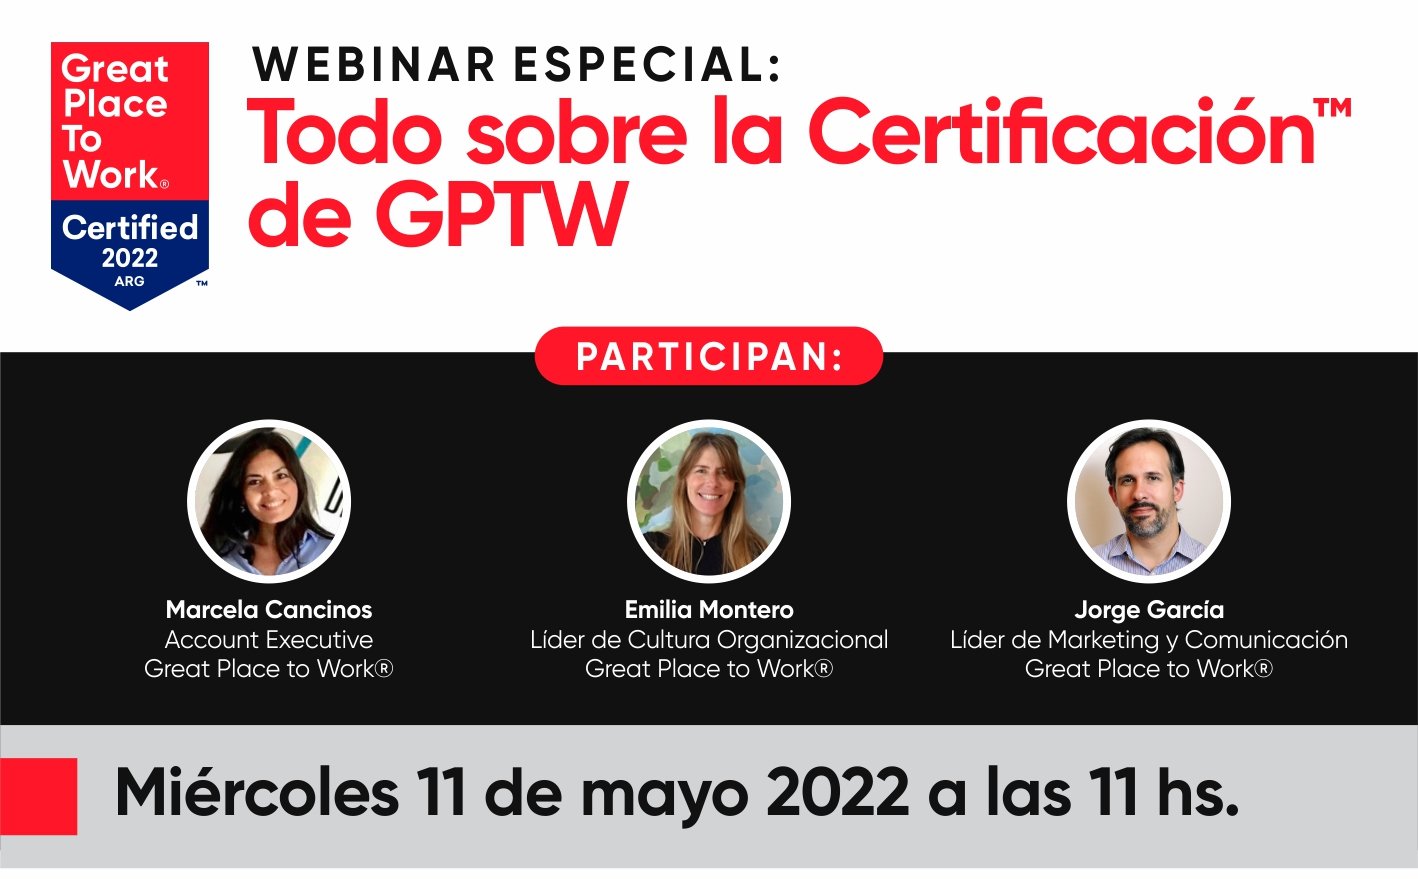 Todo sobre la Certificación™ de GPTW!